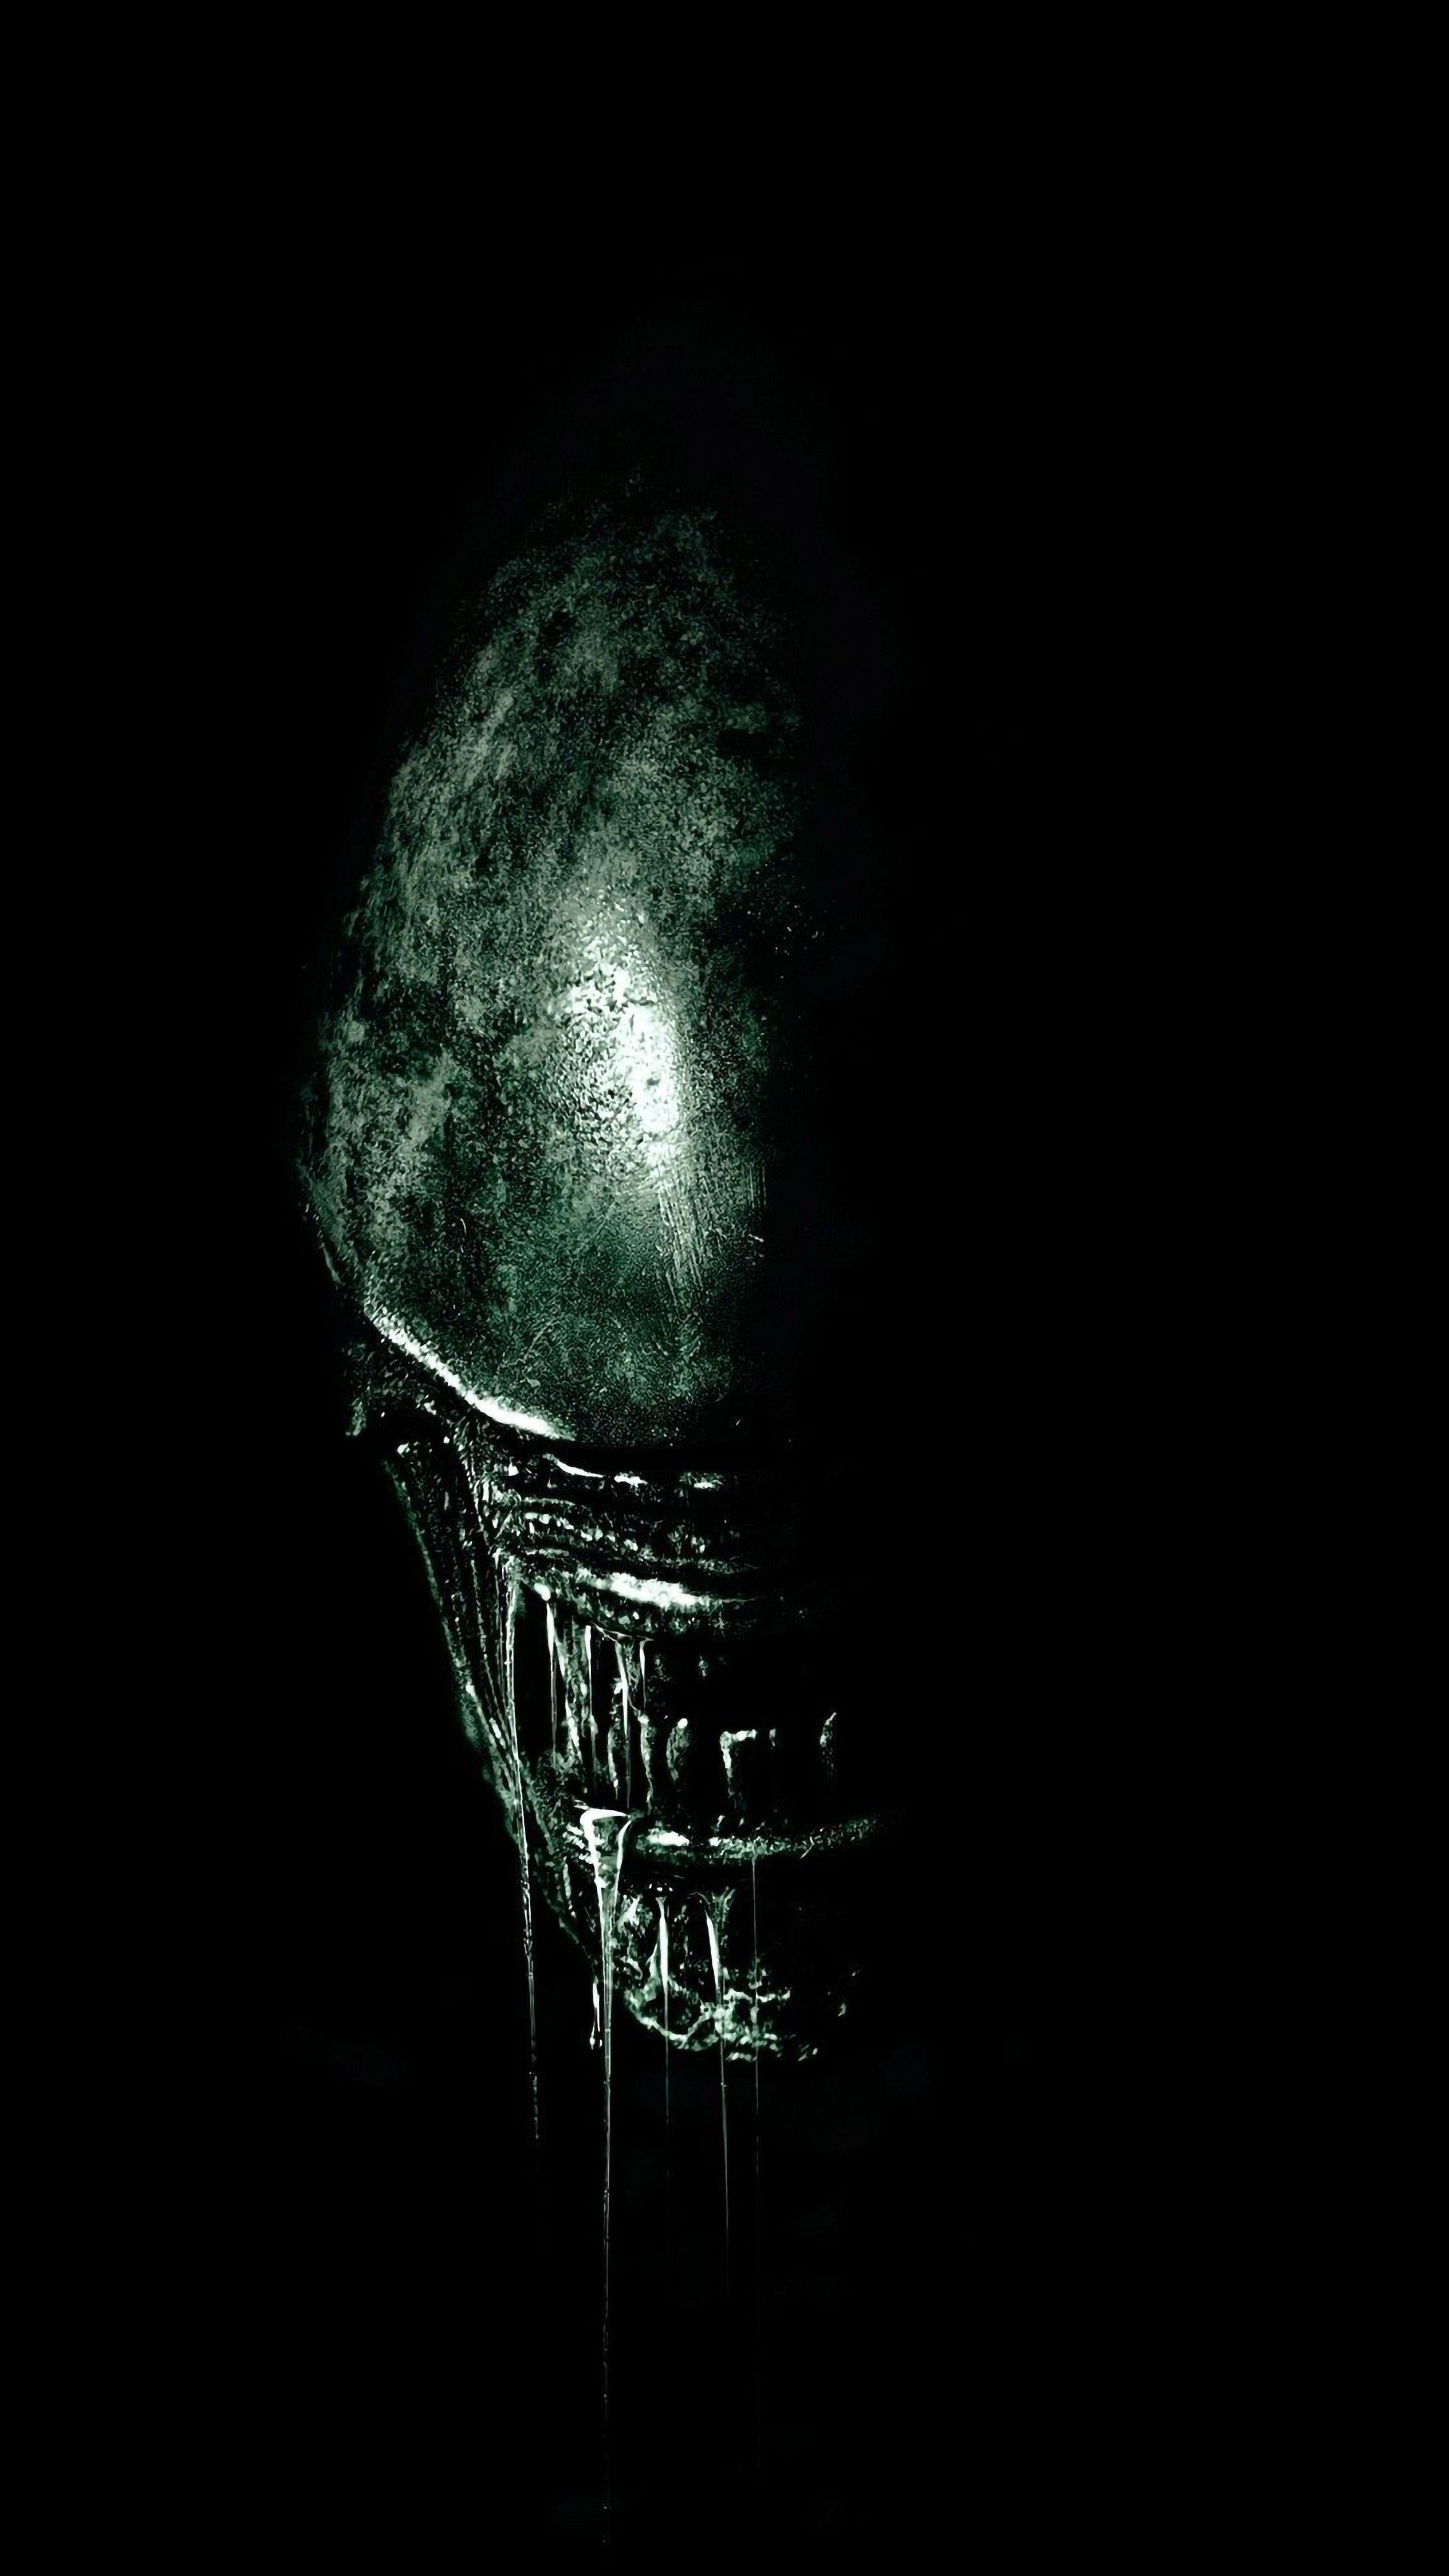 Aliens Movie Wallpapers